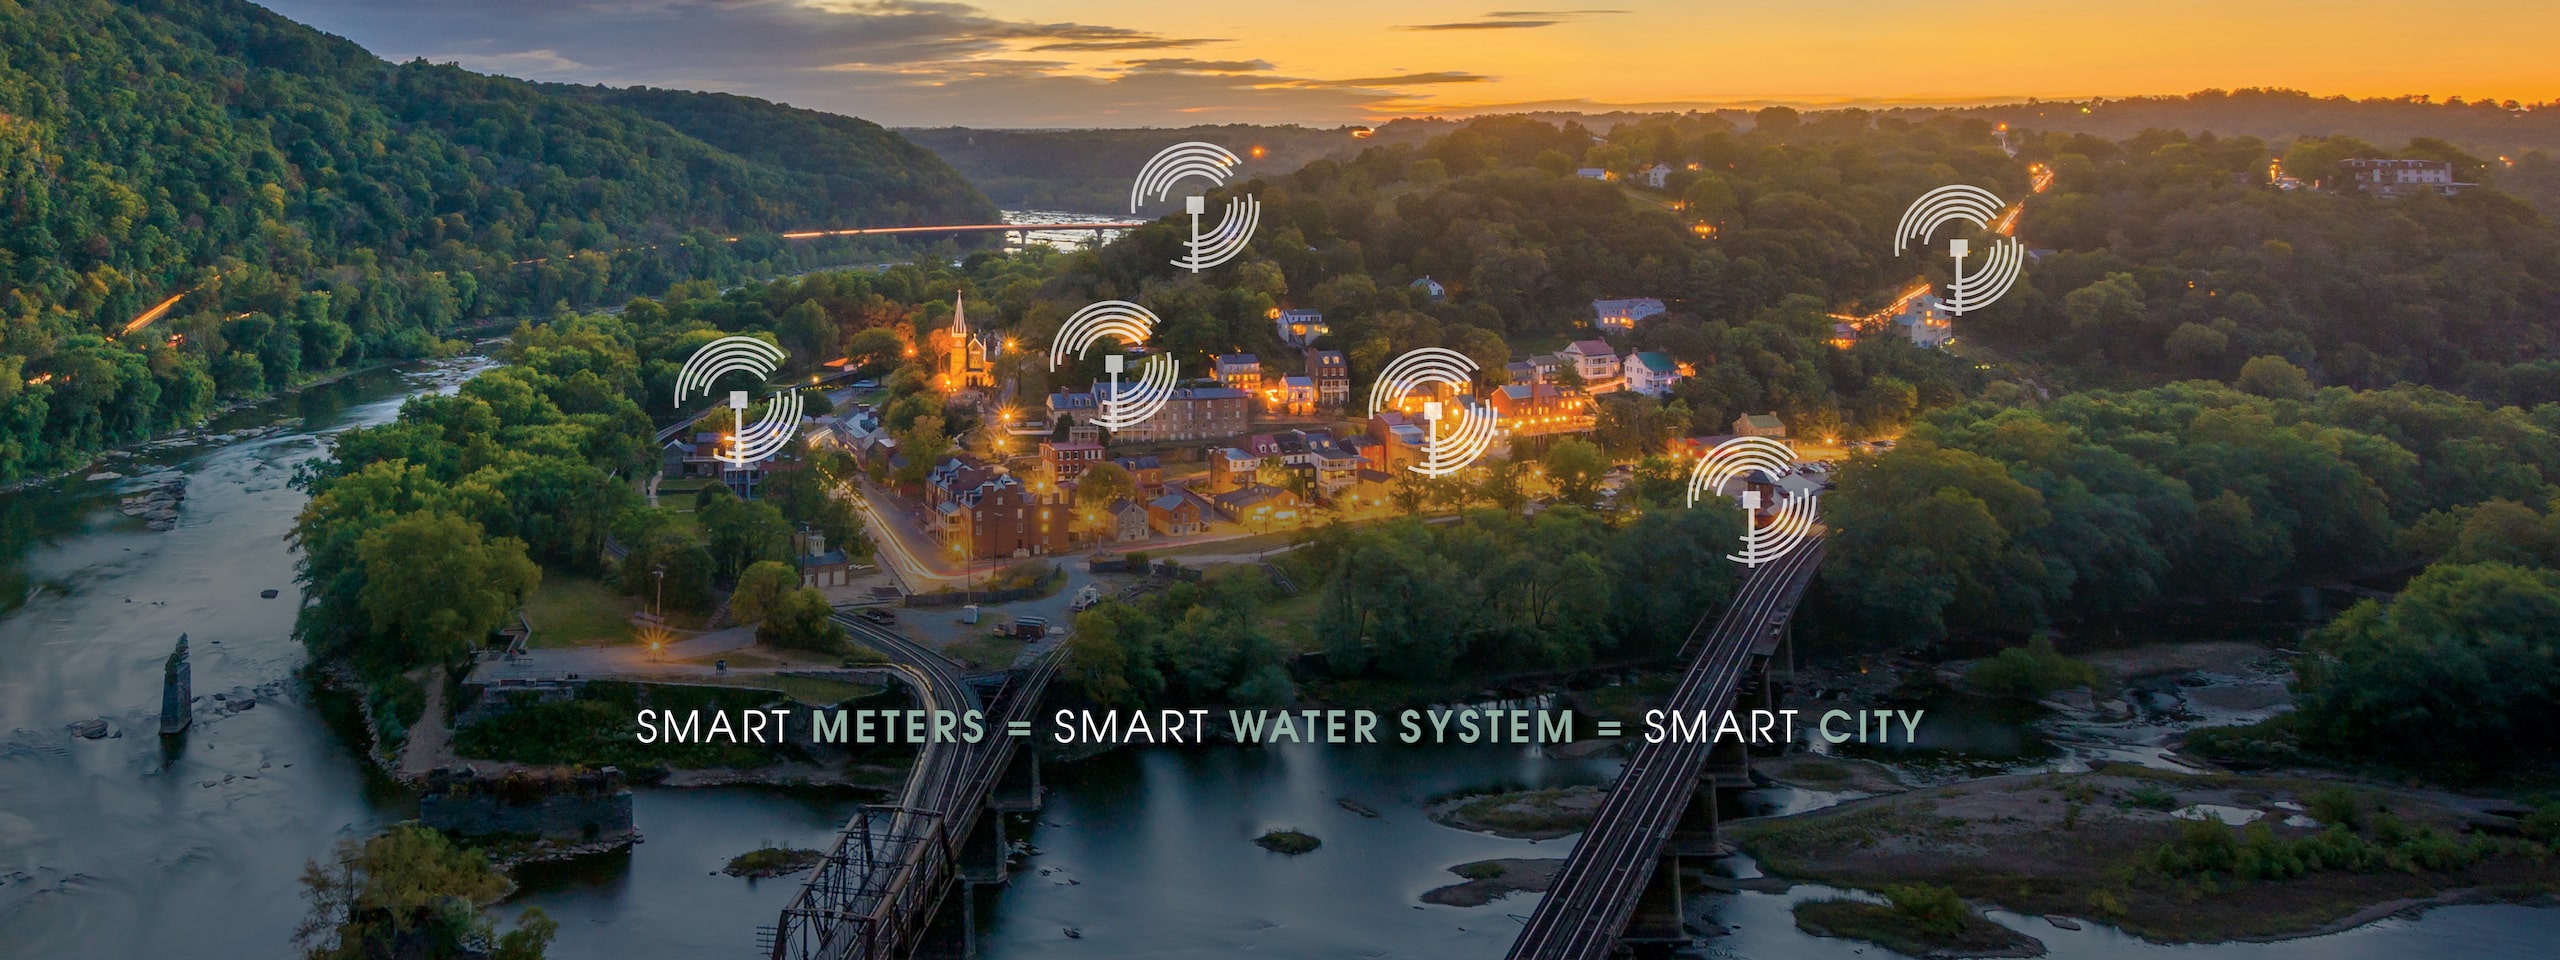 Smart Meters = Smart Water System = Smart City